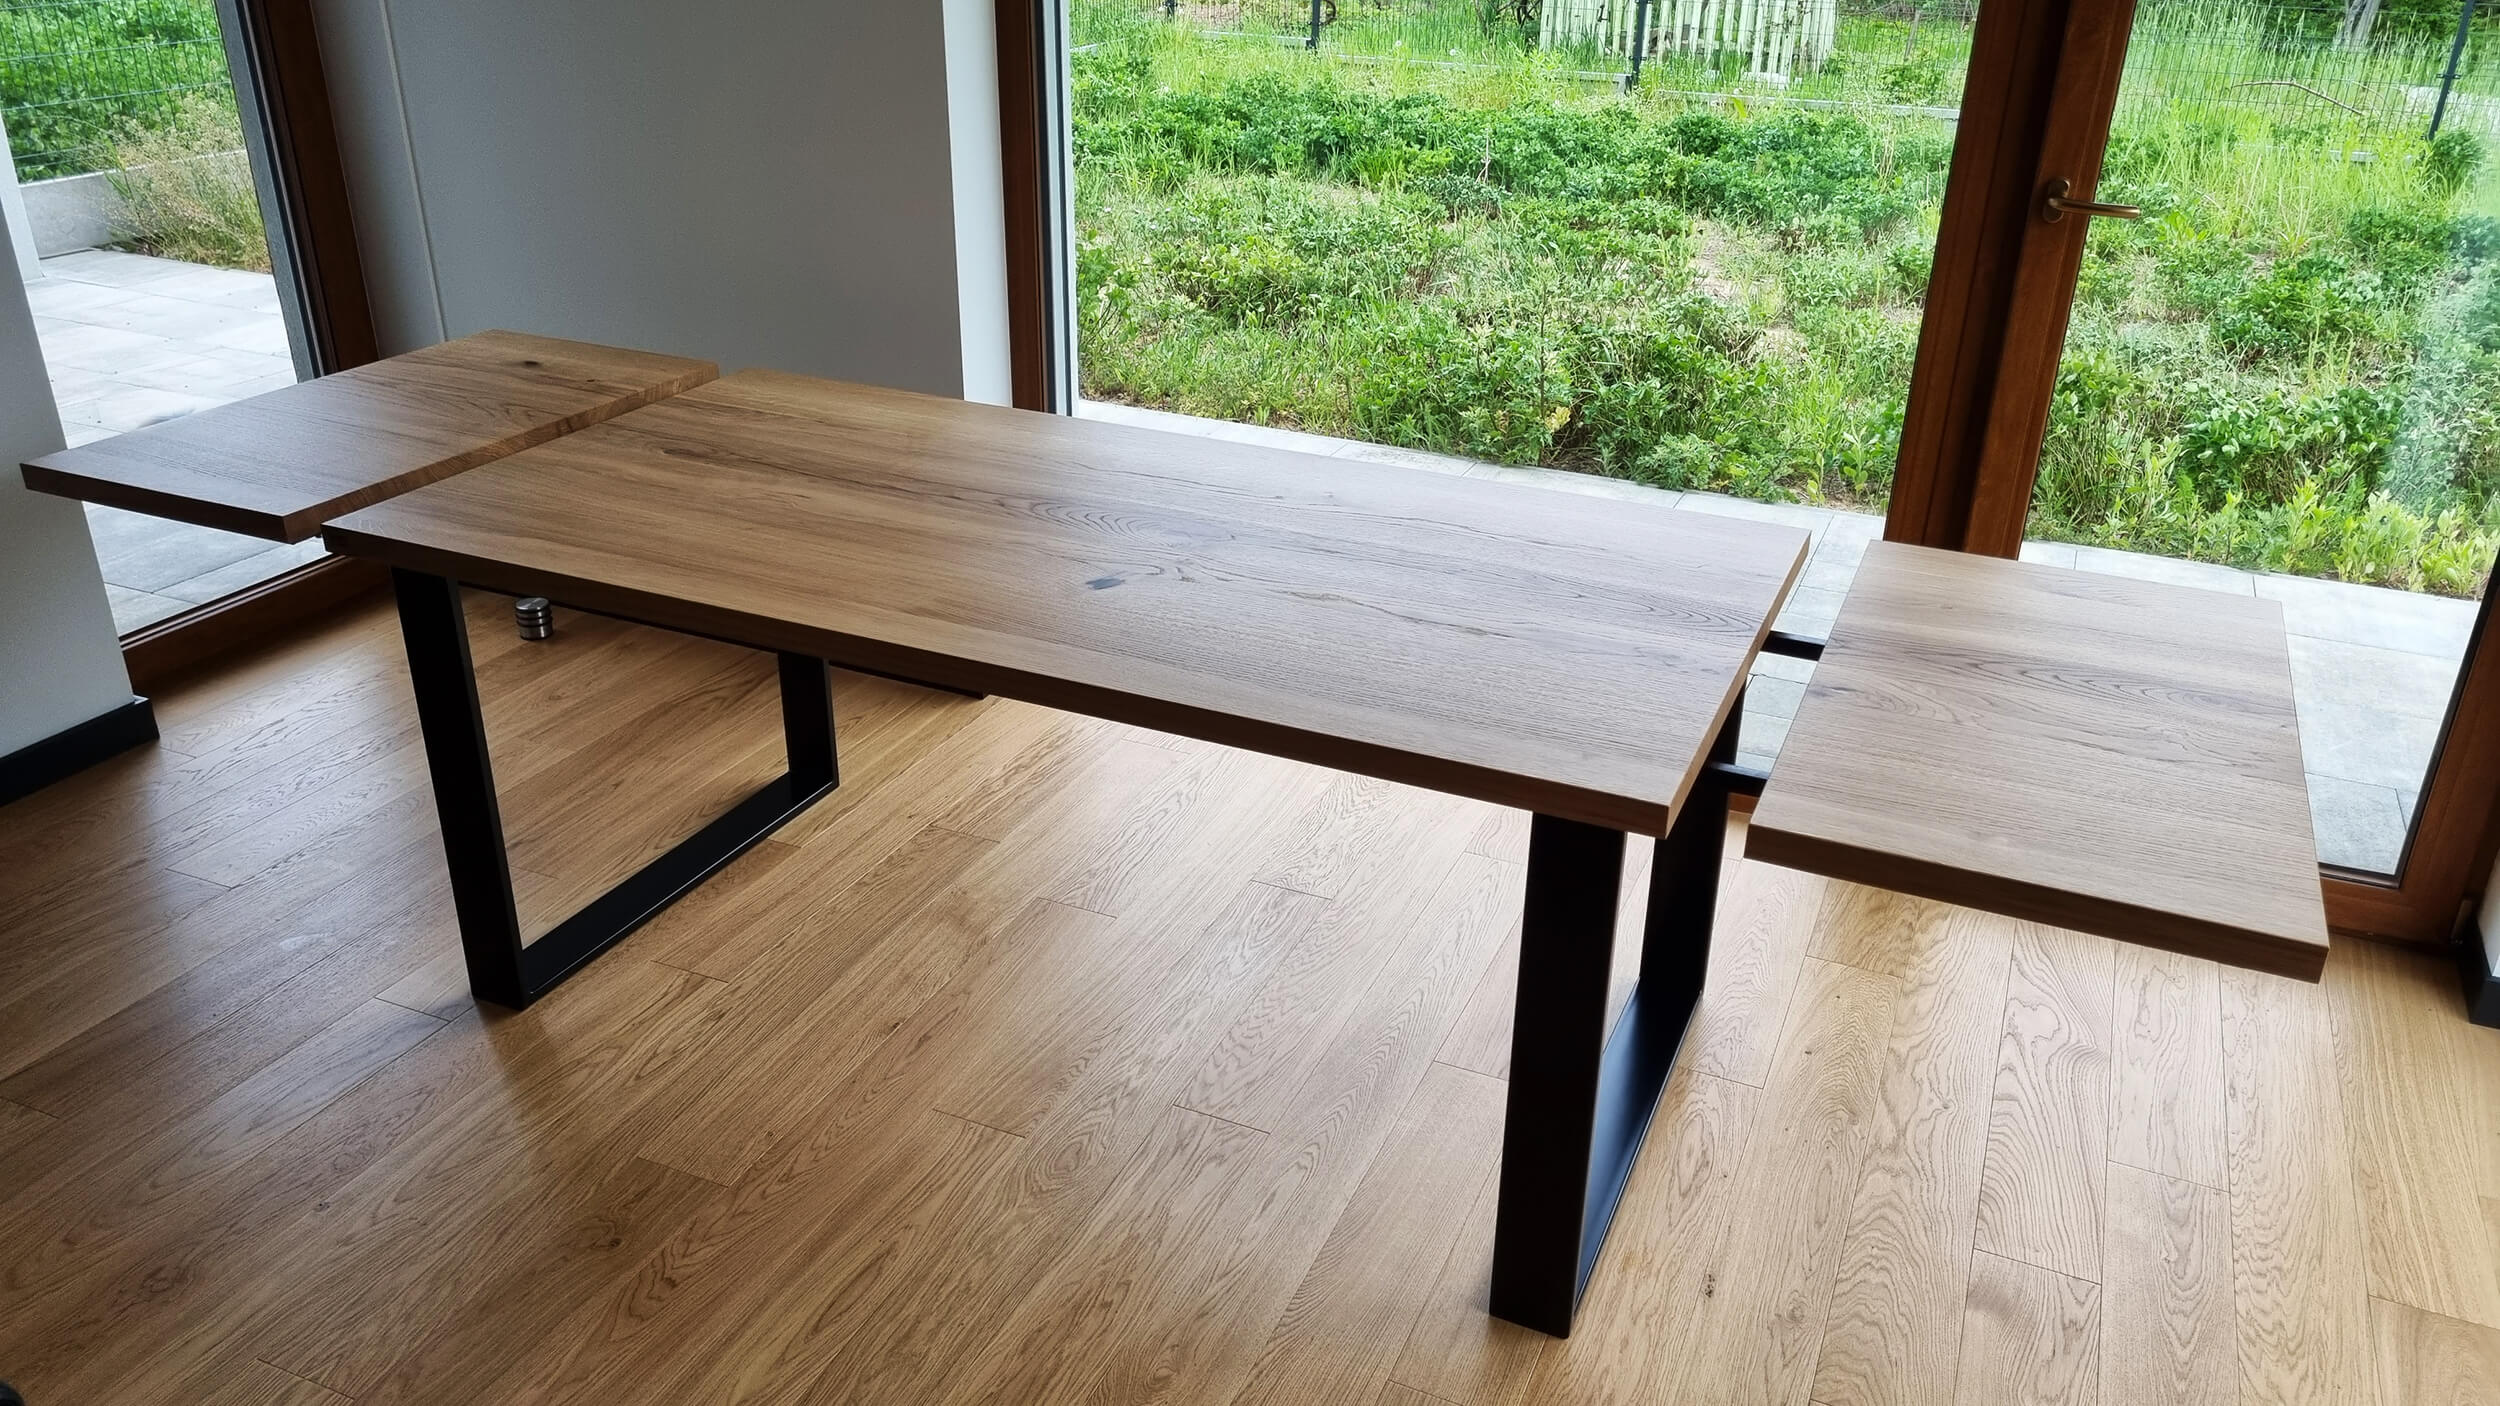 Stół dębowy rozkładany – stół drewniany rozkładany - Stoły z litego drewna i ich wykończenie - 4 dostępne technologie.